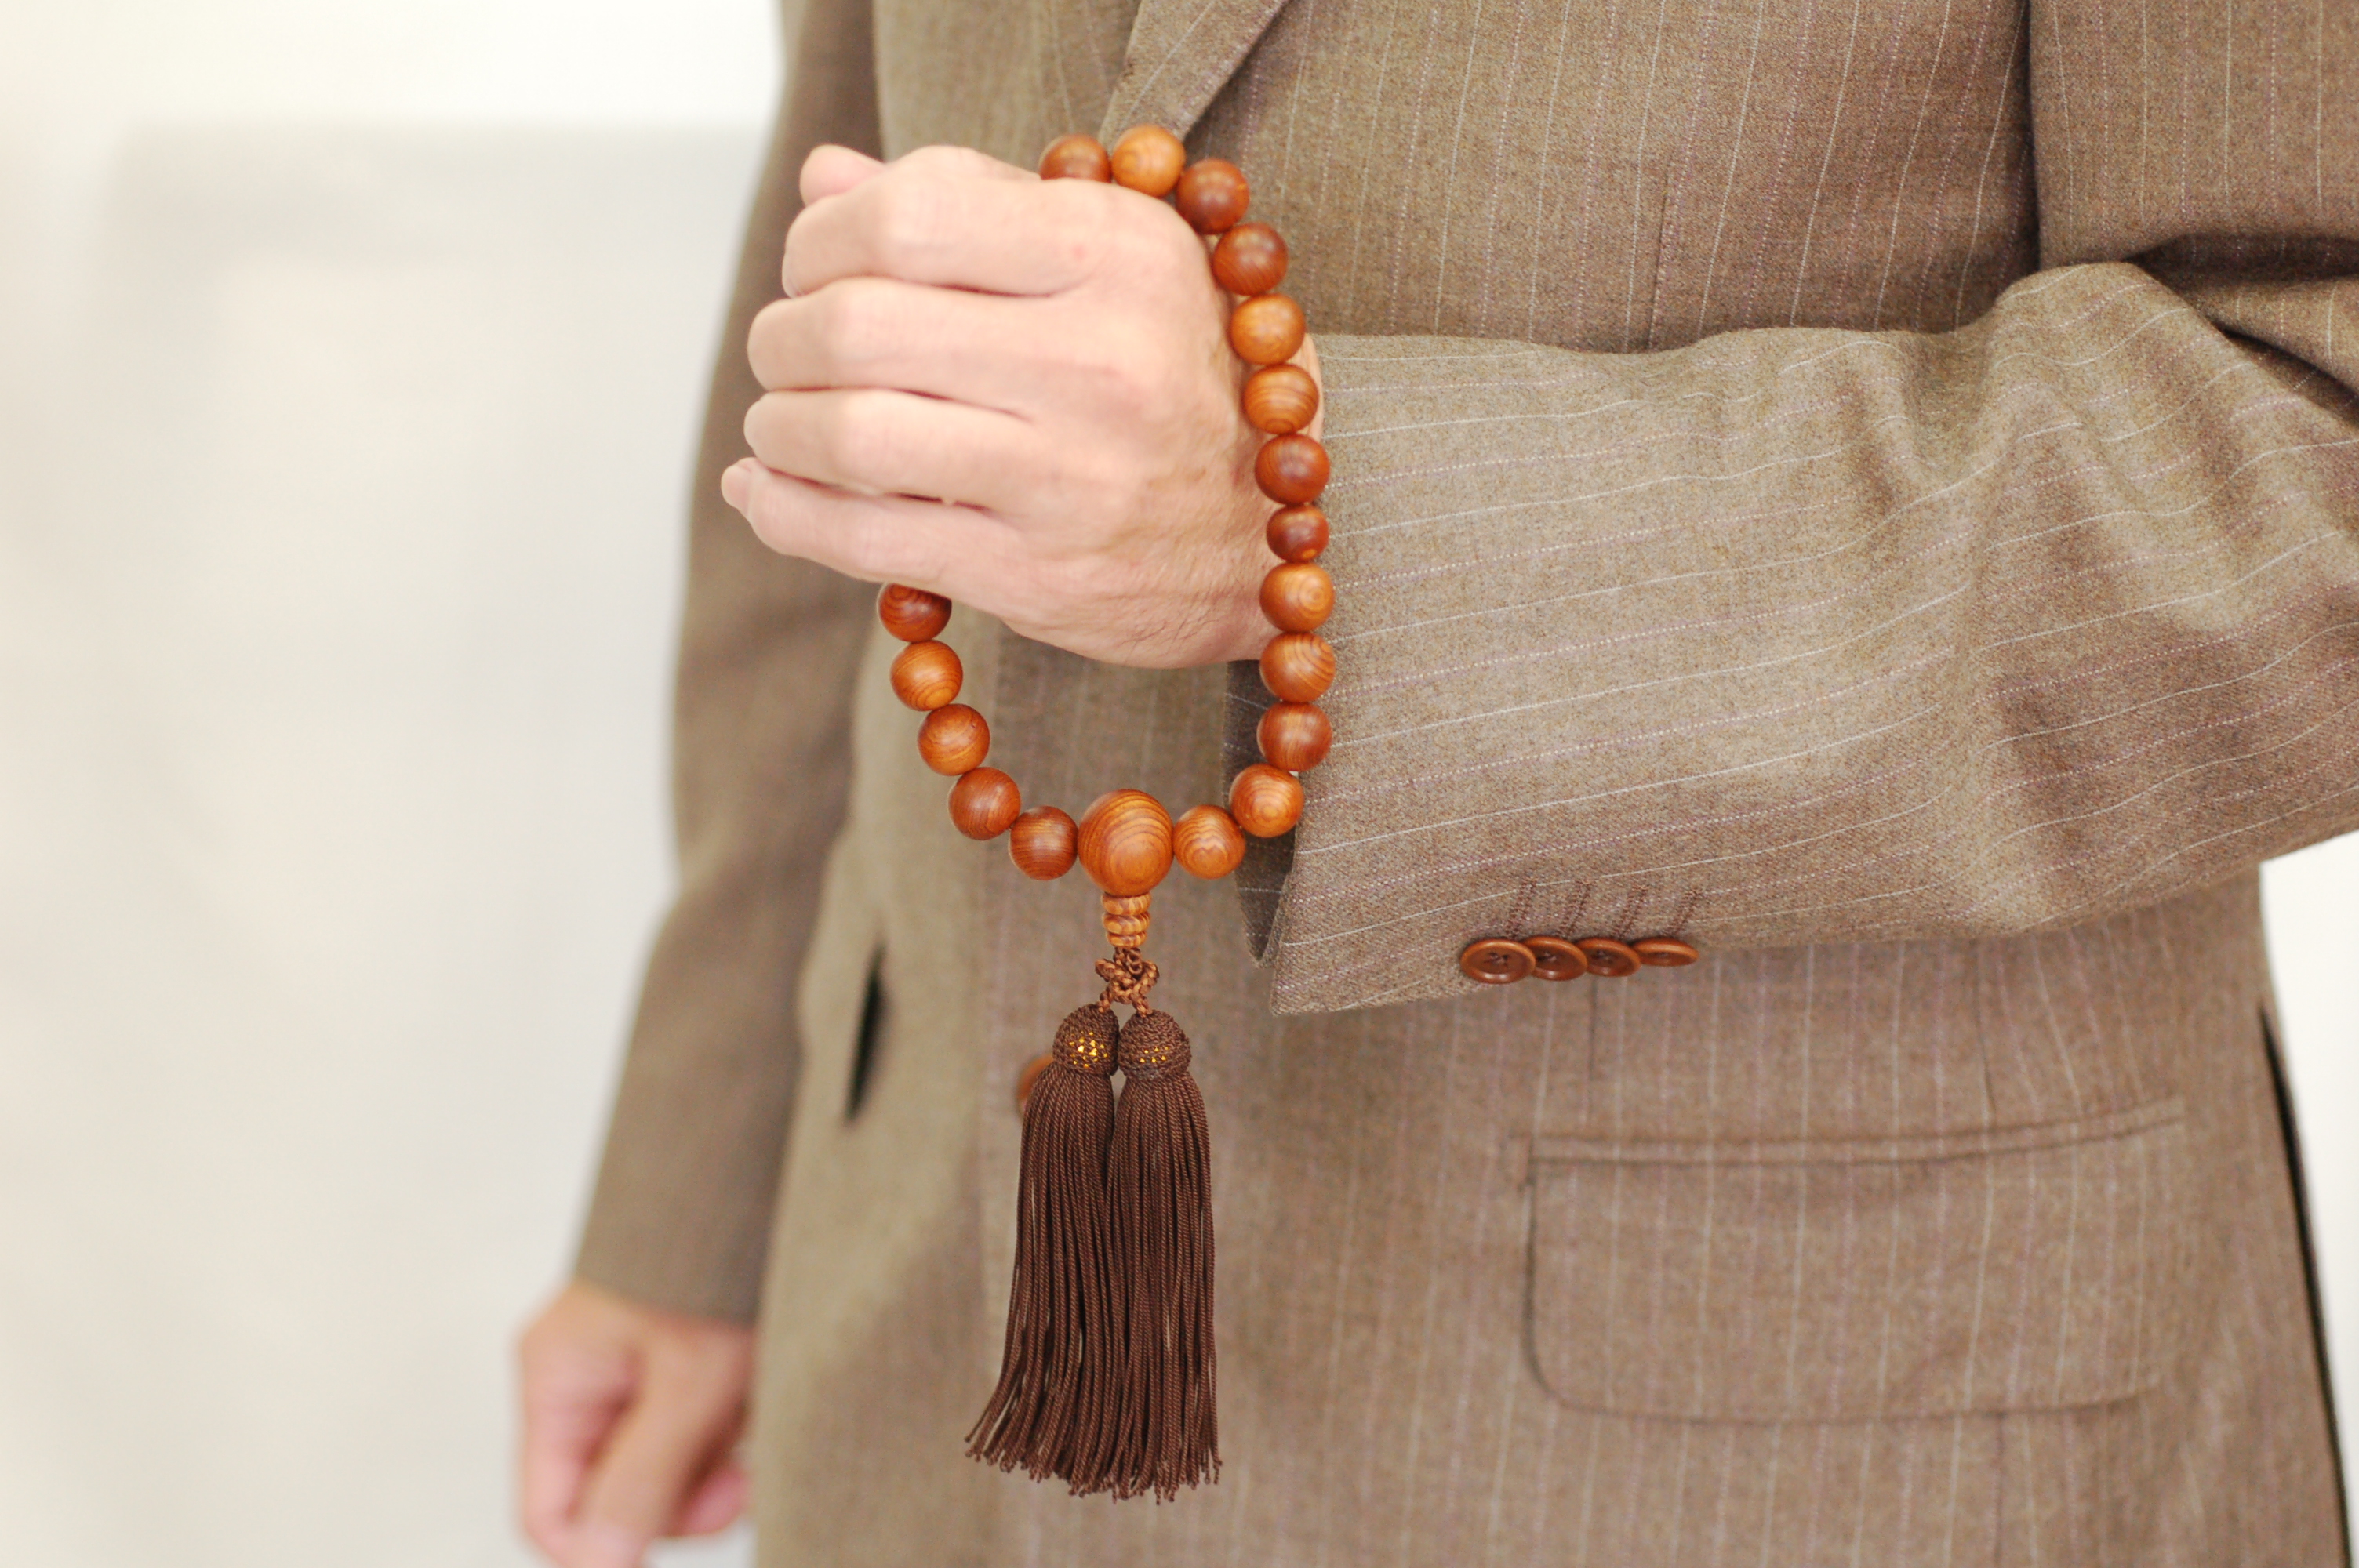 1400年の歴史を誇る近江の数珠職人が手掛けた 男性用 屋久杉の念珠